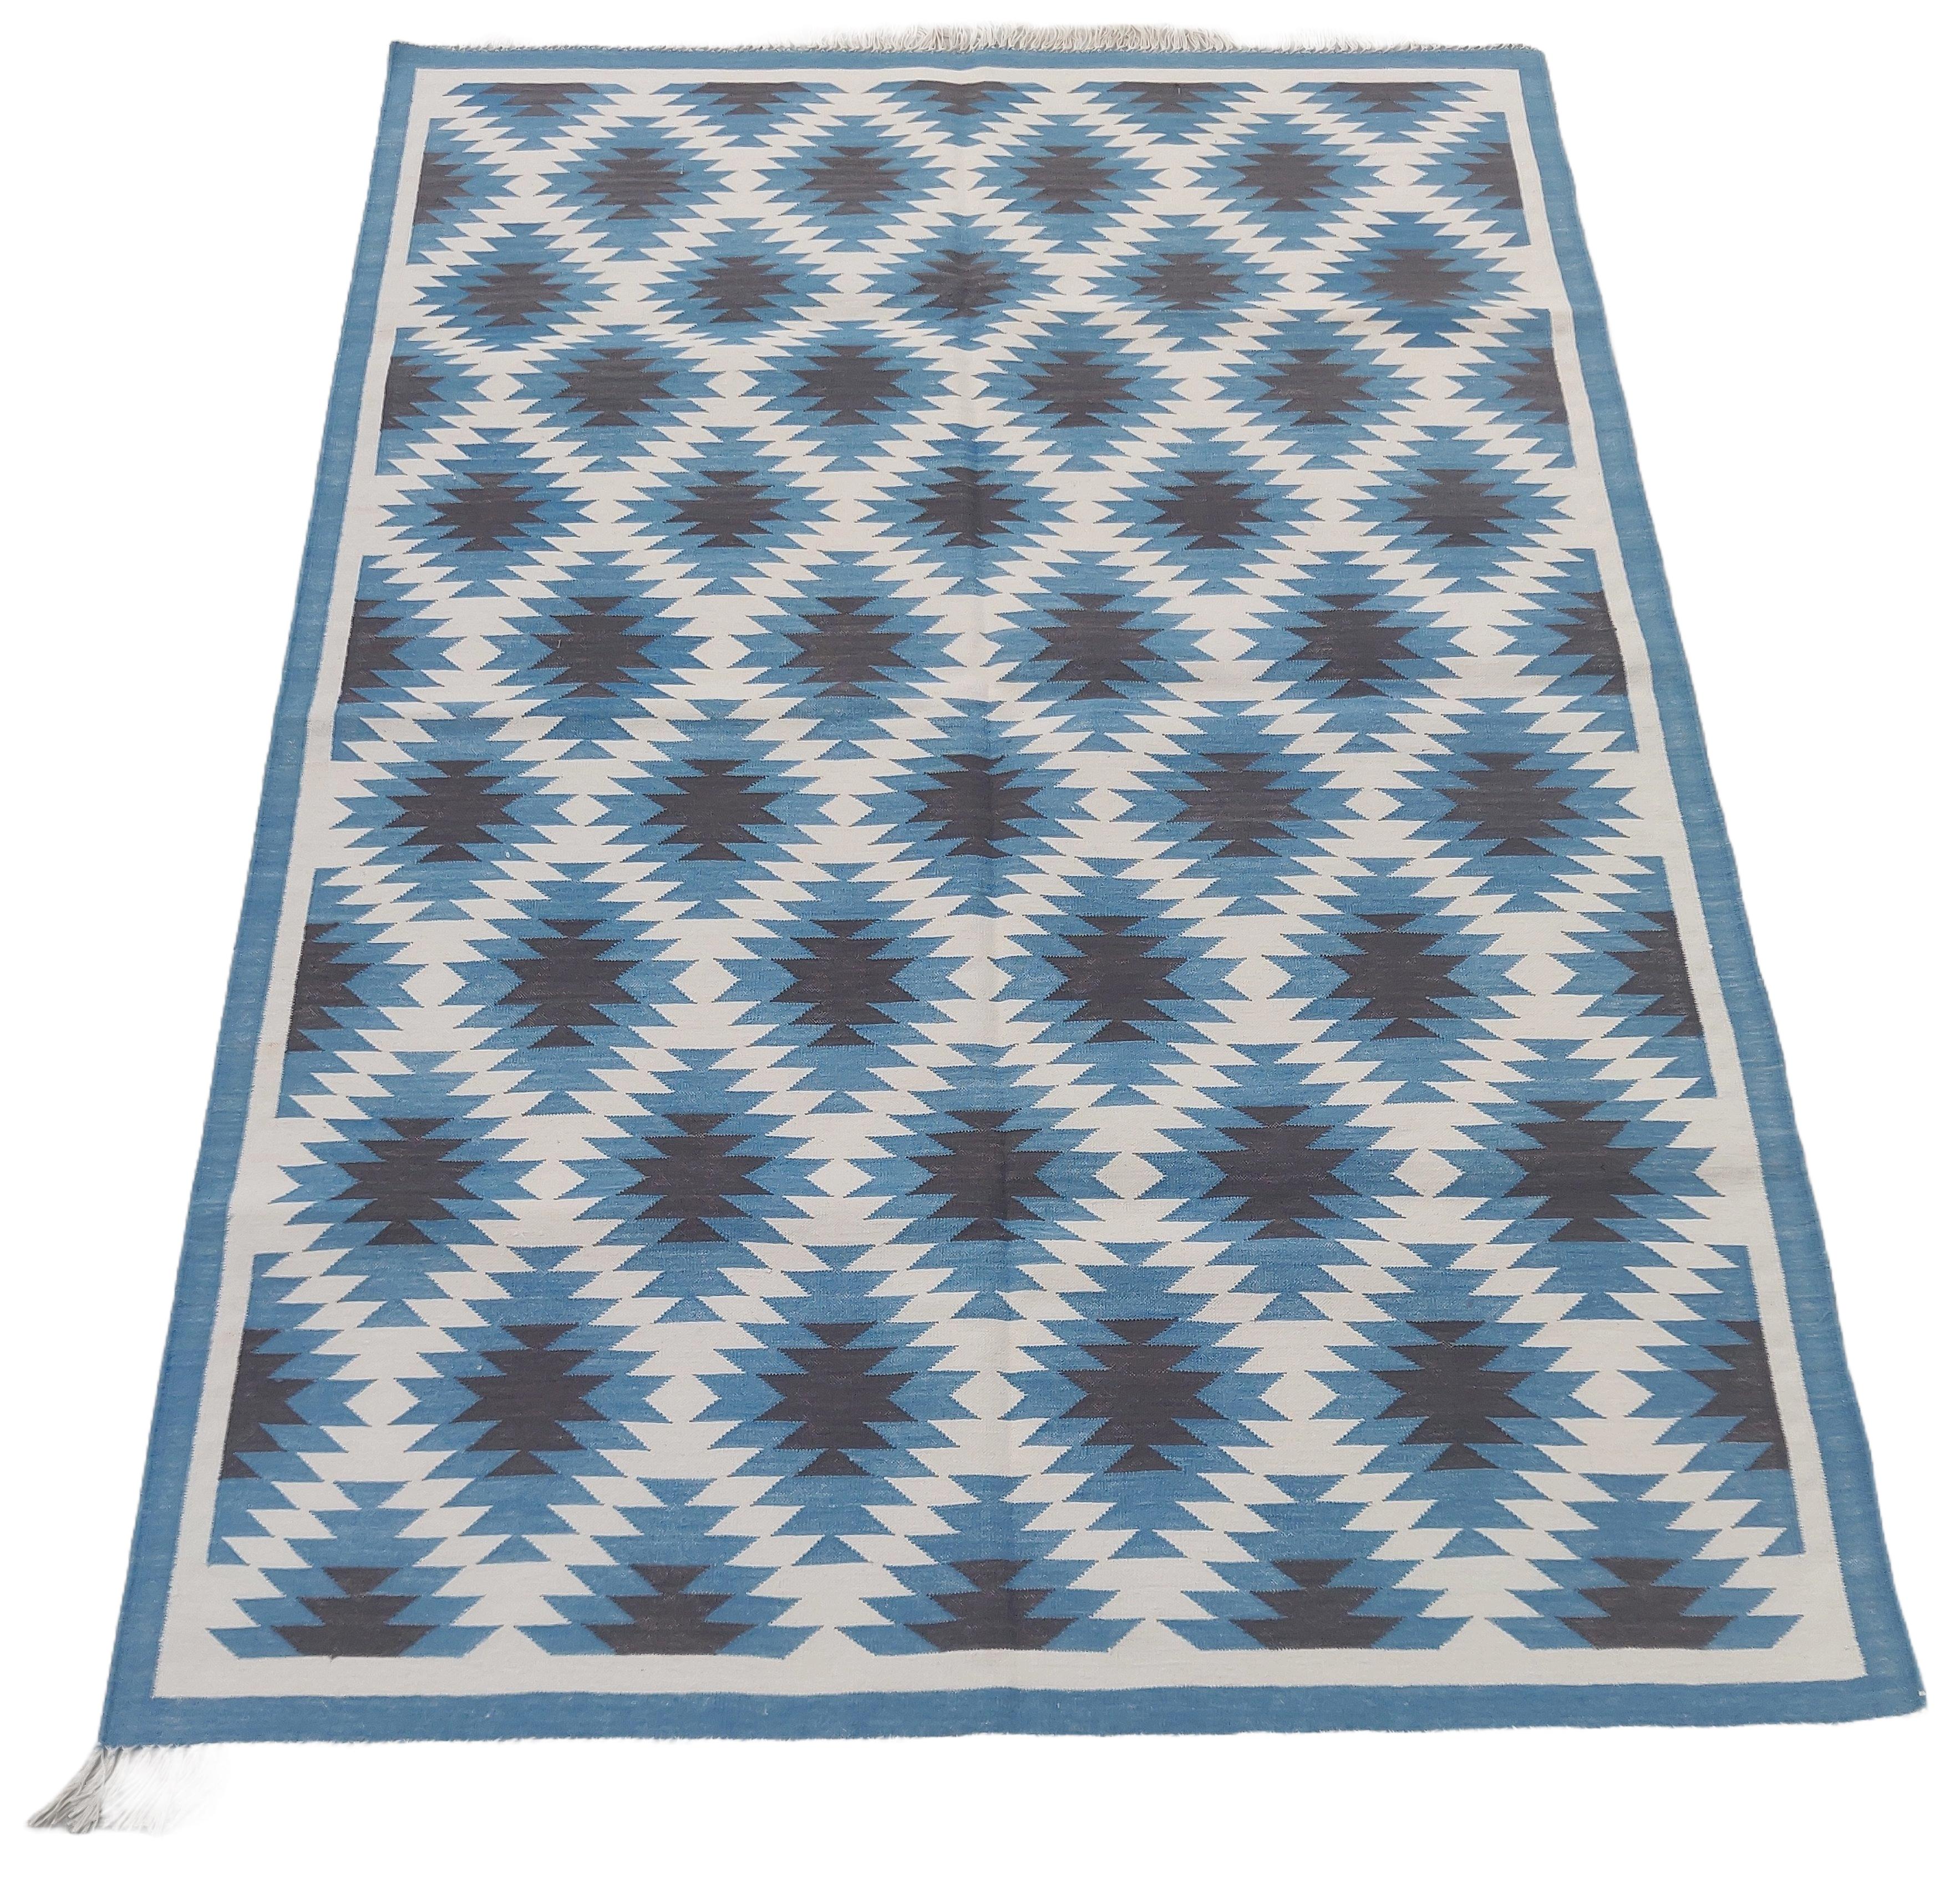 Tapis indien géométrique Dhurrie en coton teint dans la masse bleu et blanc - 4 x 6 pieds 

Ces dhurries spéciales à tissage plat sont tissées à la main avec du fil 100 % coton 15 plis. En raison des techniques de fabrication spéciales utilisées